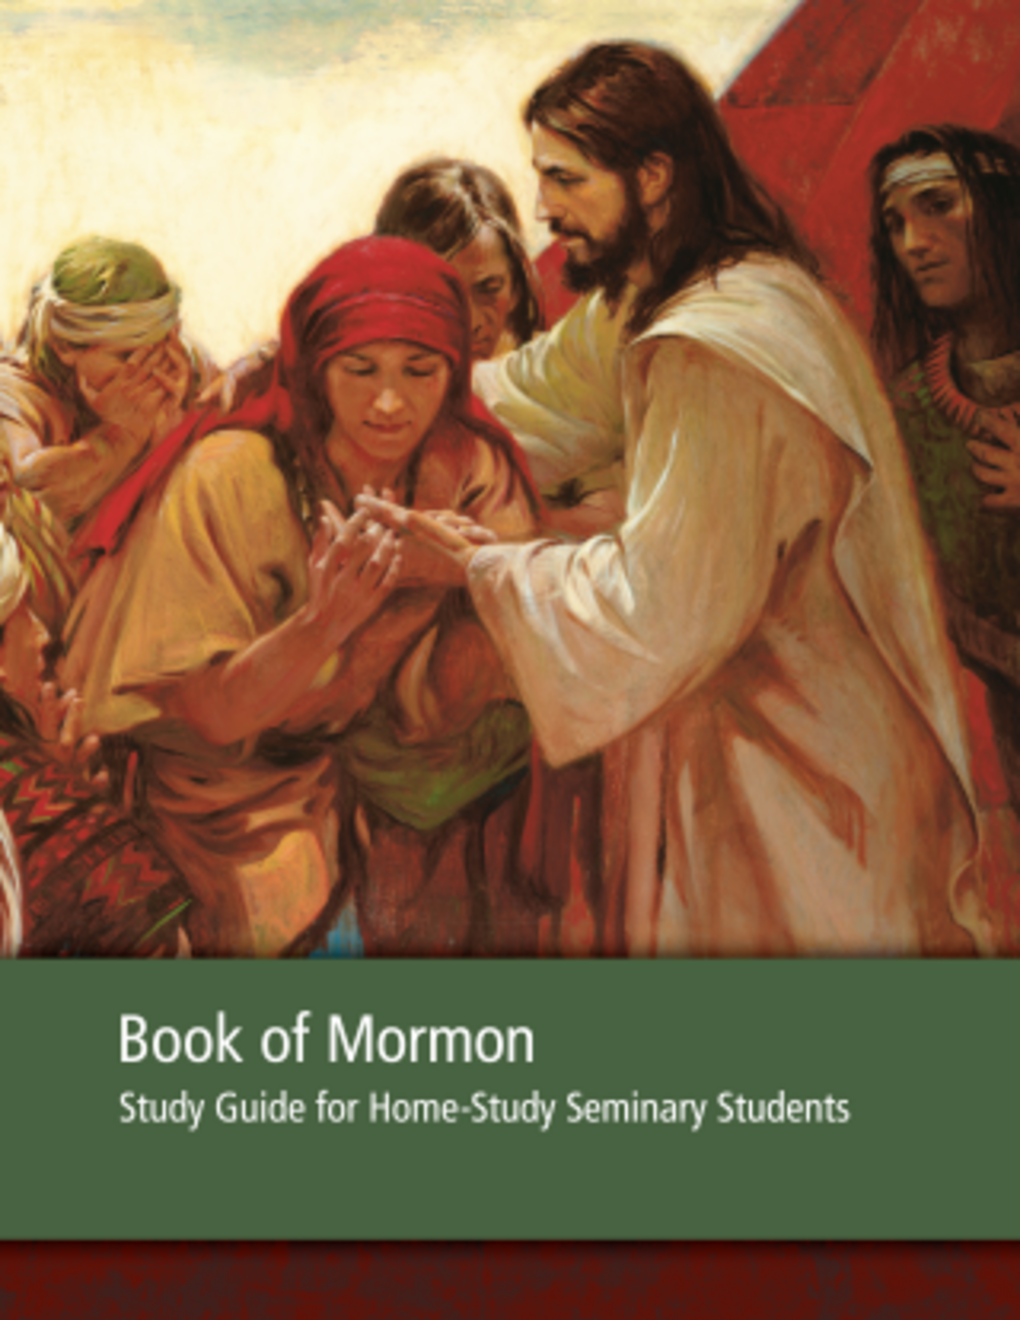 Mormoni Raamatu õpik seminari koduõppe õpilastele – 2013